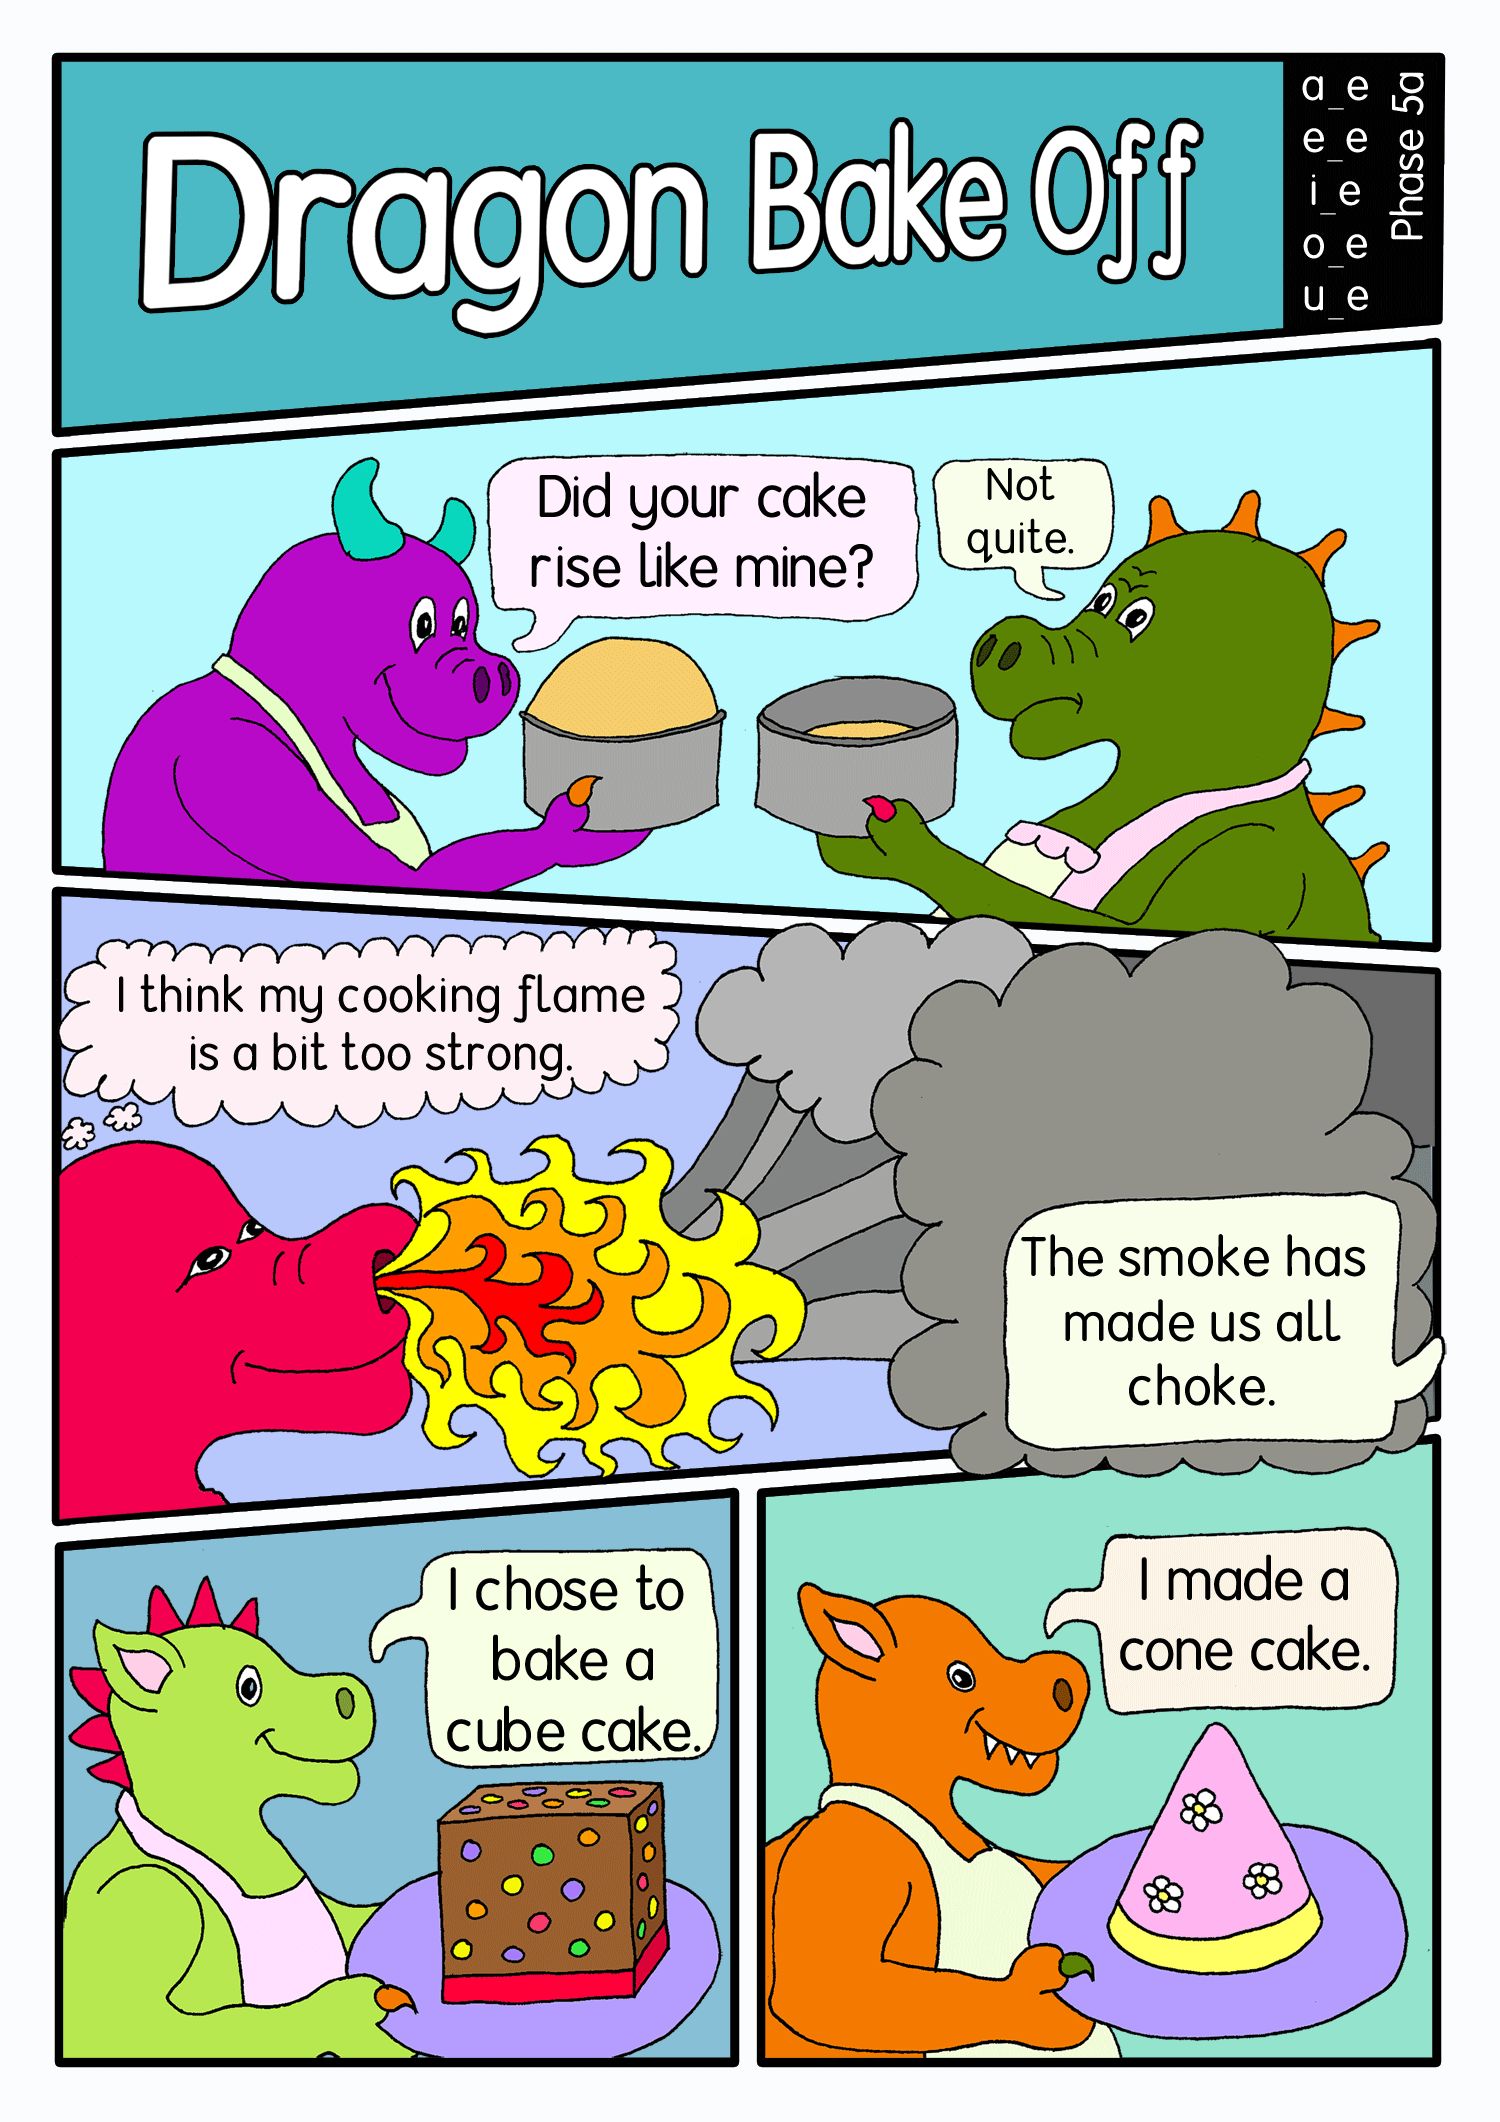 Dragon bake off panel1